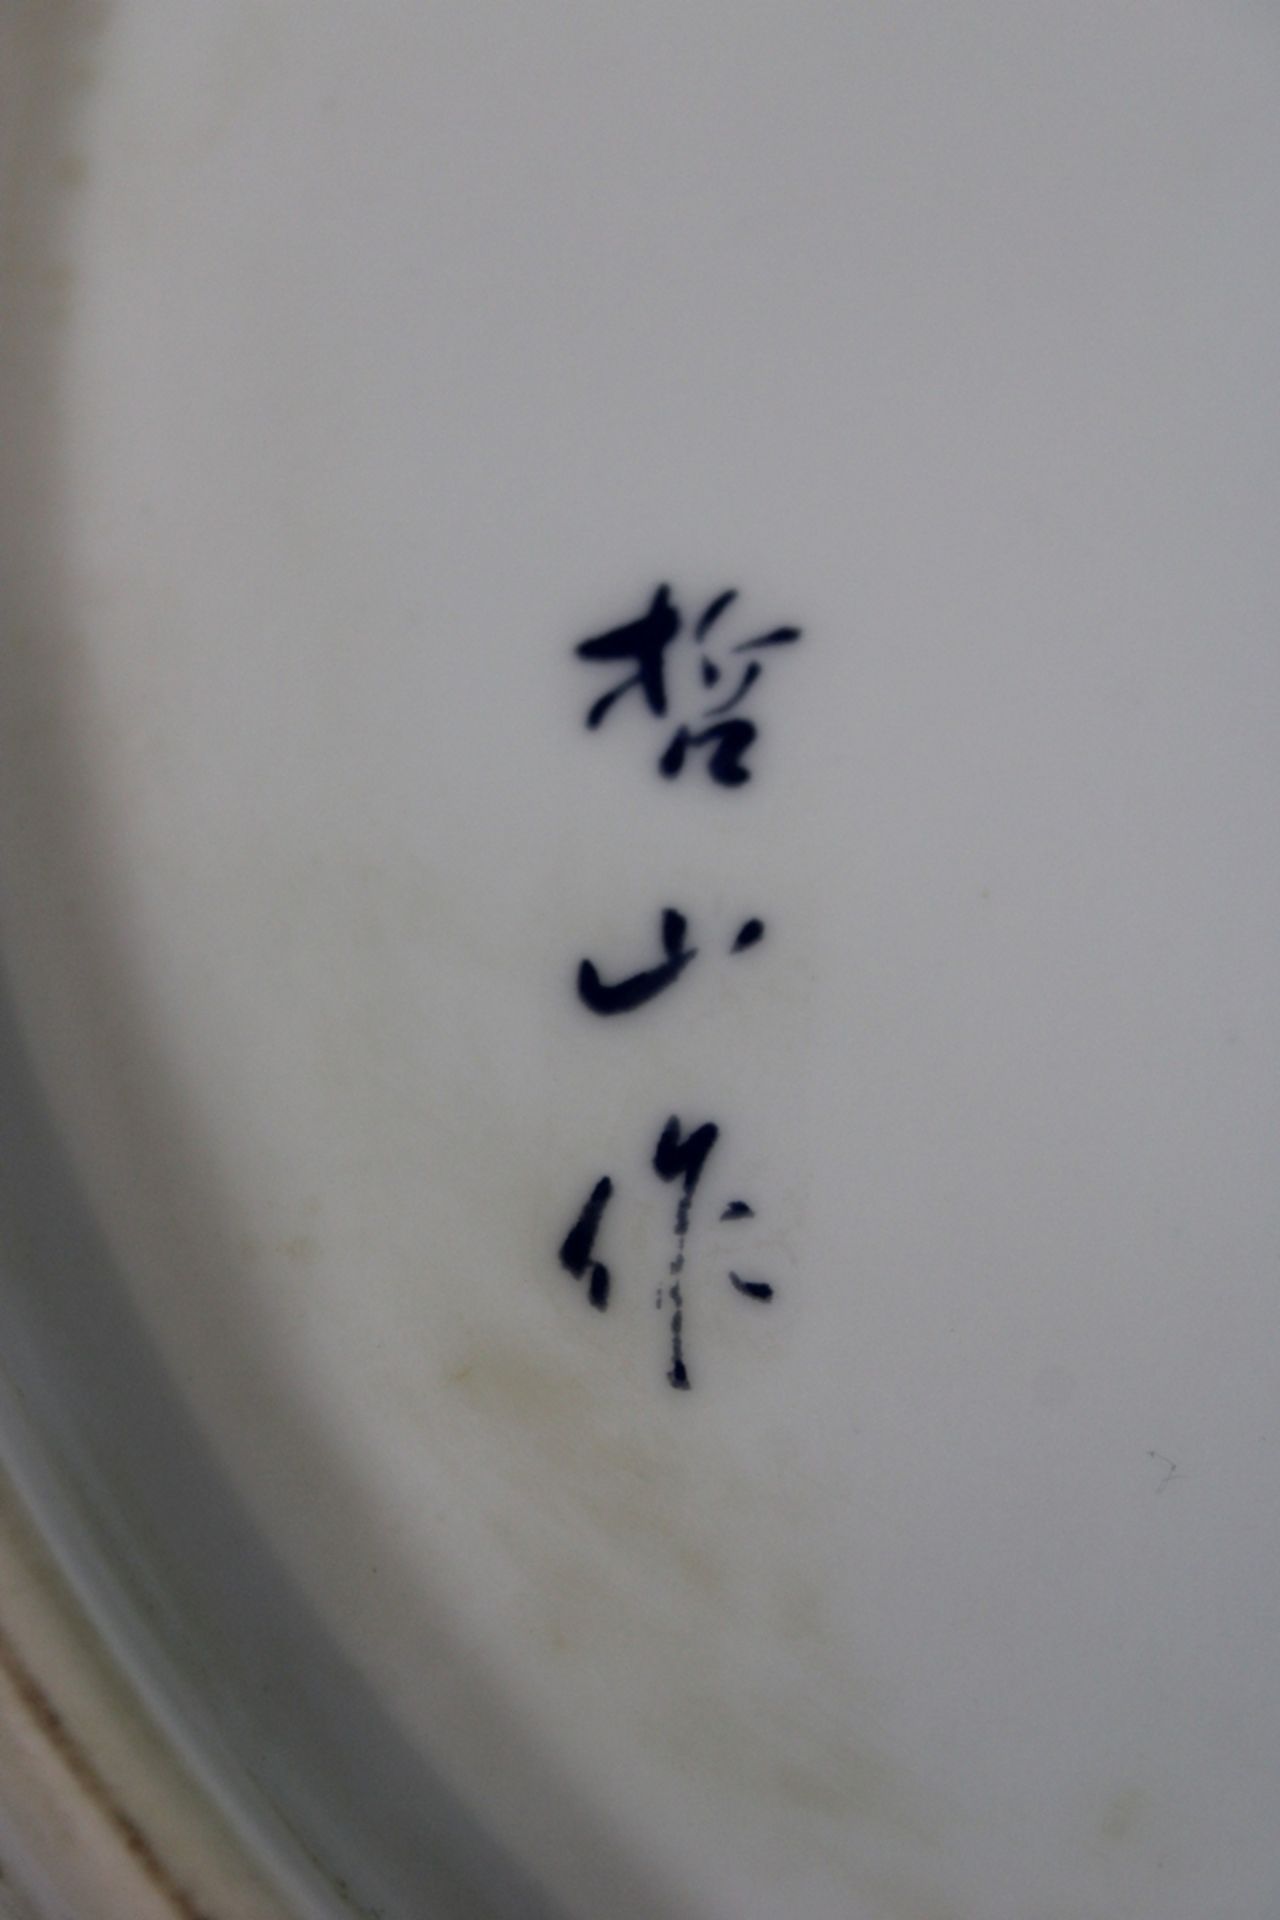 Großer Imari Teller, Japan, Porzellan, Marke am Boden, Dm: 34 cm. Guter, altersbedingter Zustand, G - Bild 3 aus 3